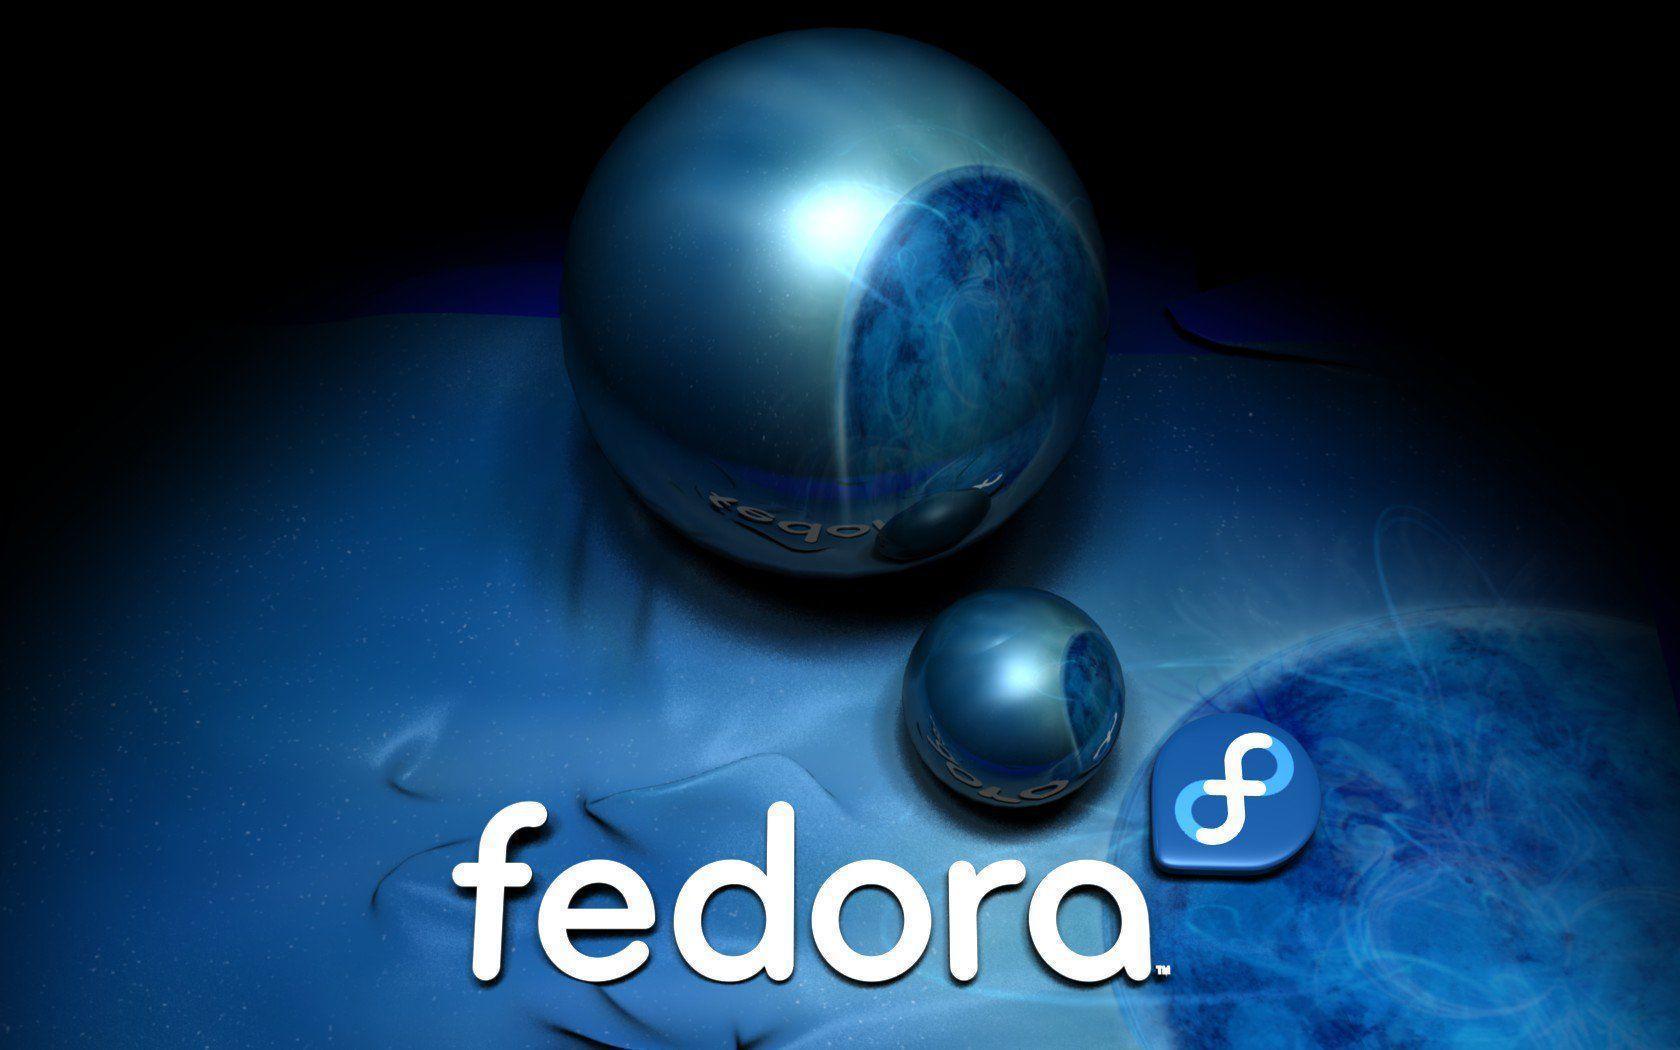 Fedora Blue Ball Wallpaper